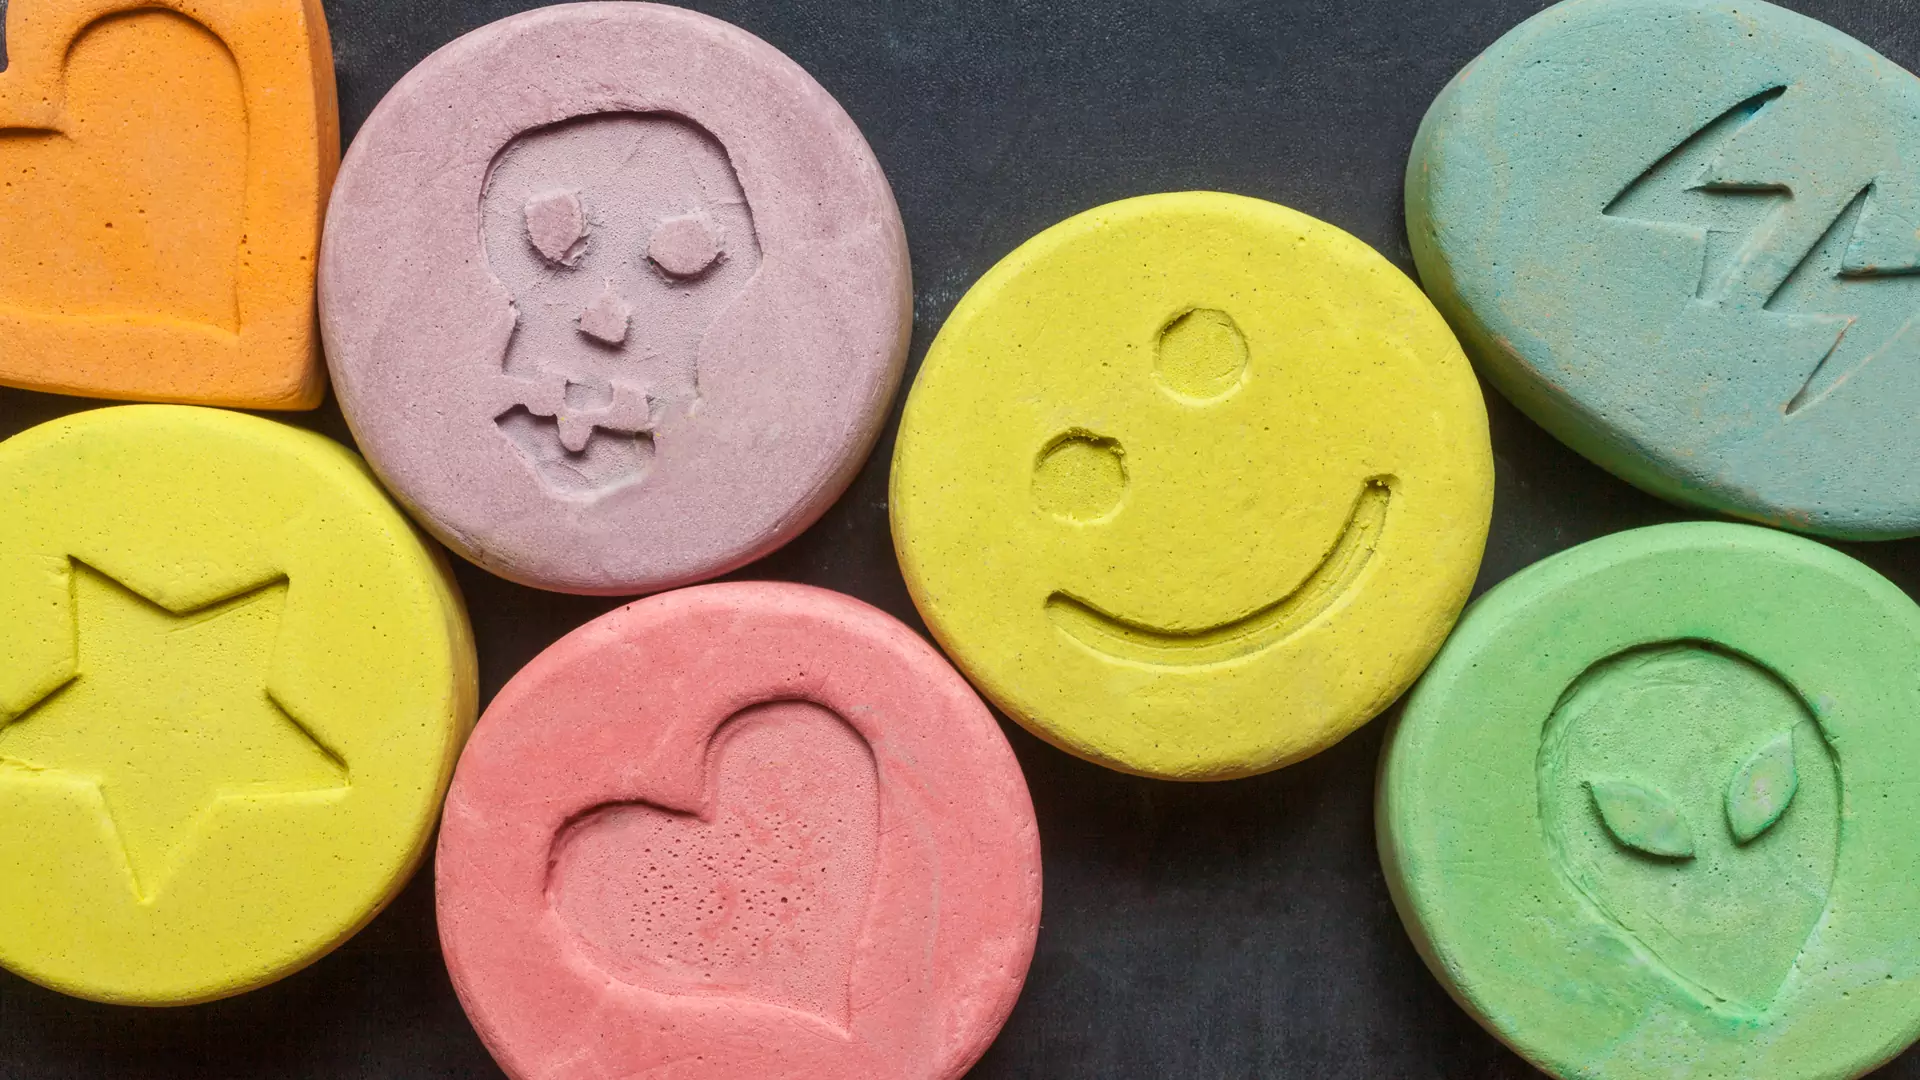 Podrabiane MDMA na festiwalach. Po zażyciu możliwe skutki uboczne